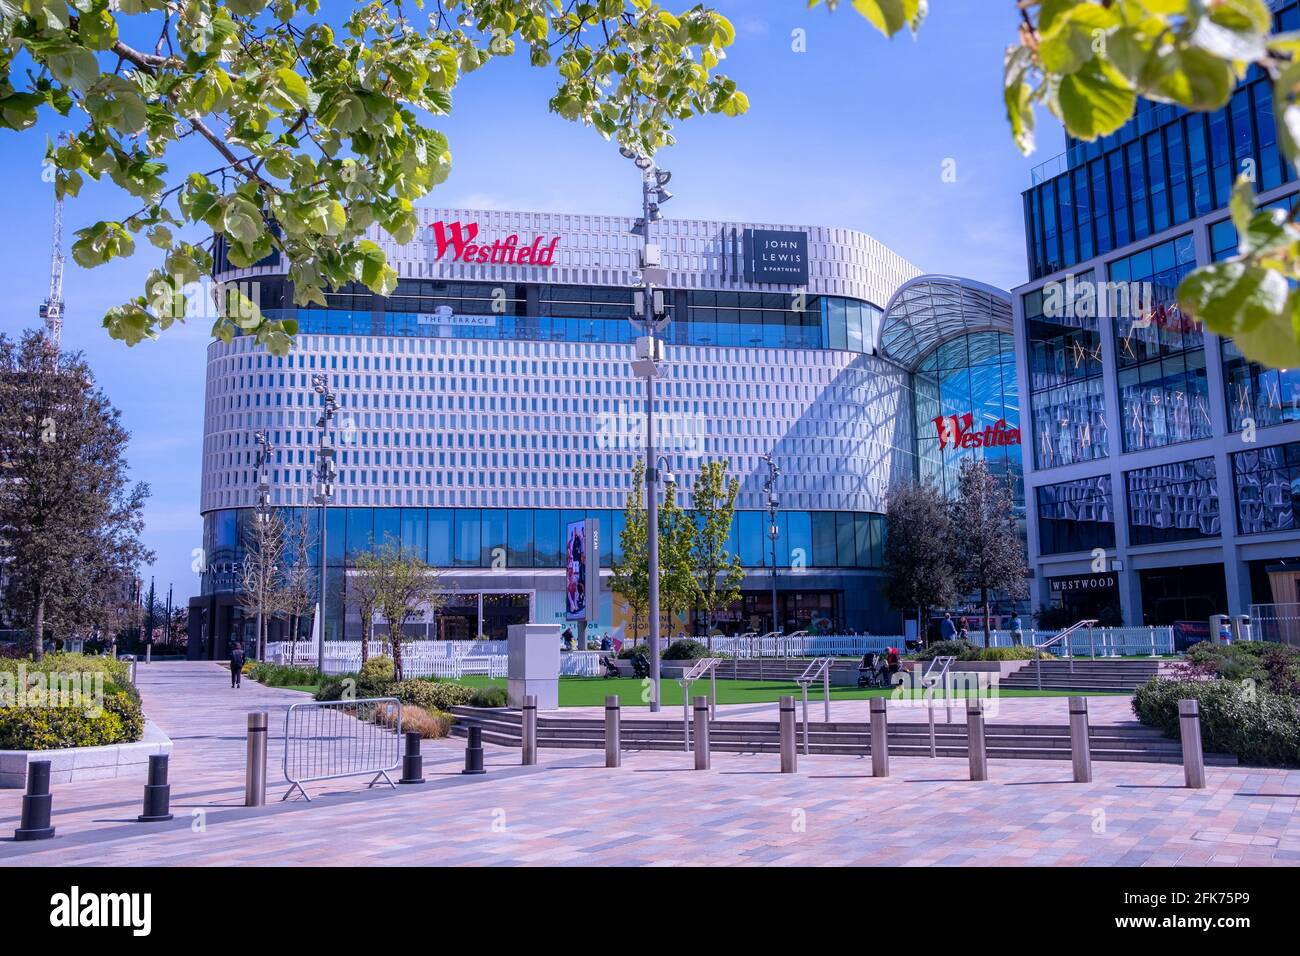 Londres- Abril 2021: Centro Comercial Westfield en Shepherds Bush. Gran centro de venta al por menor cubierto con muchas calles altas y cadenas de lujo. Foto de stock